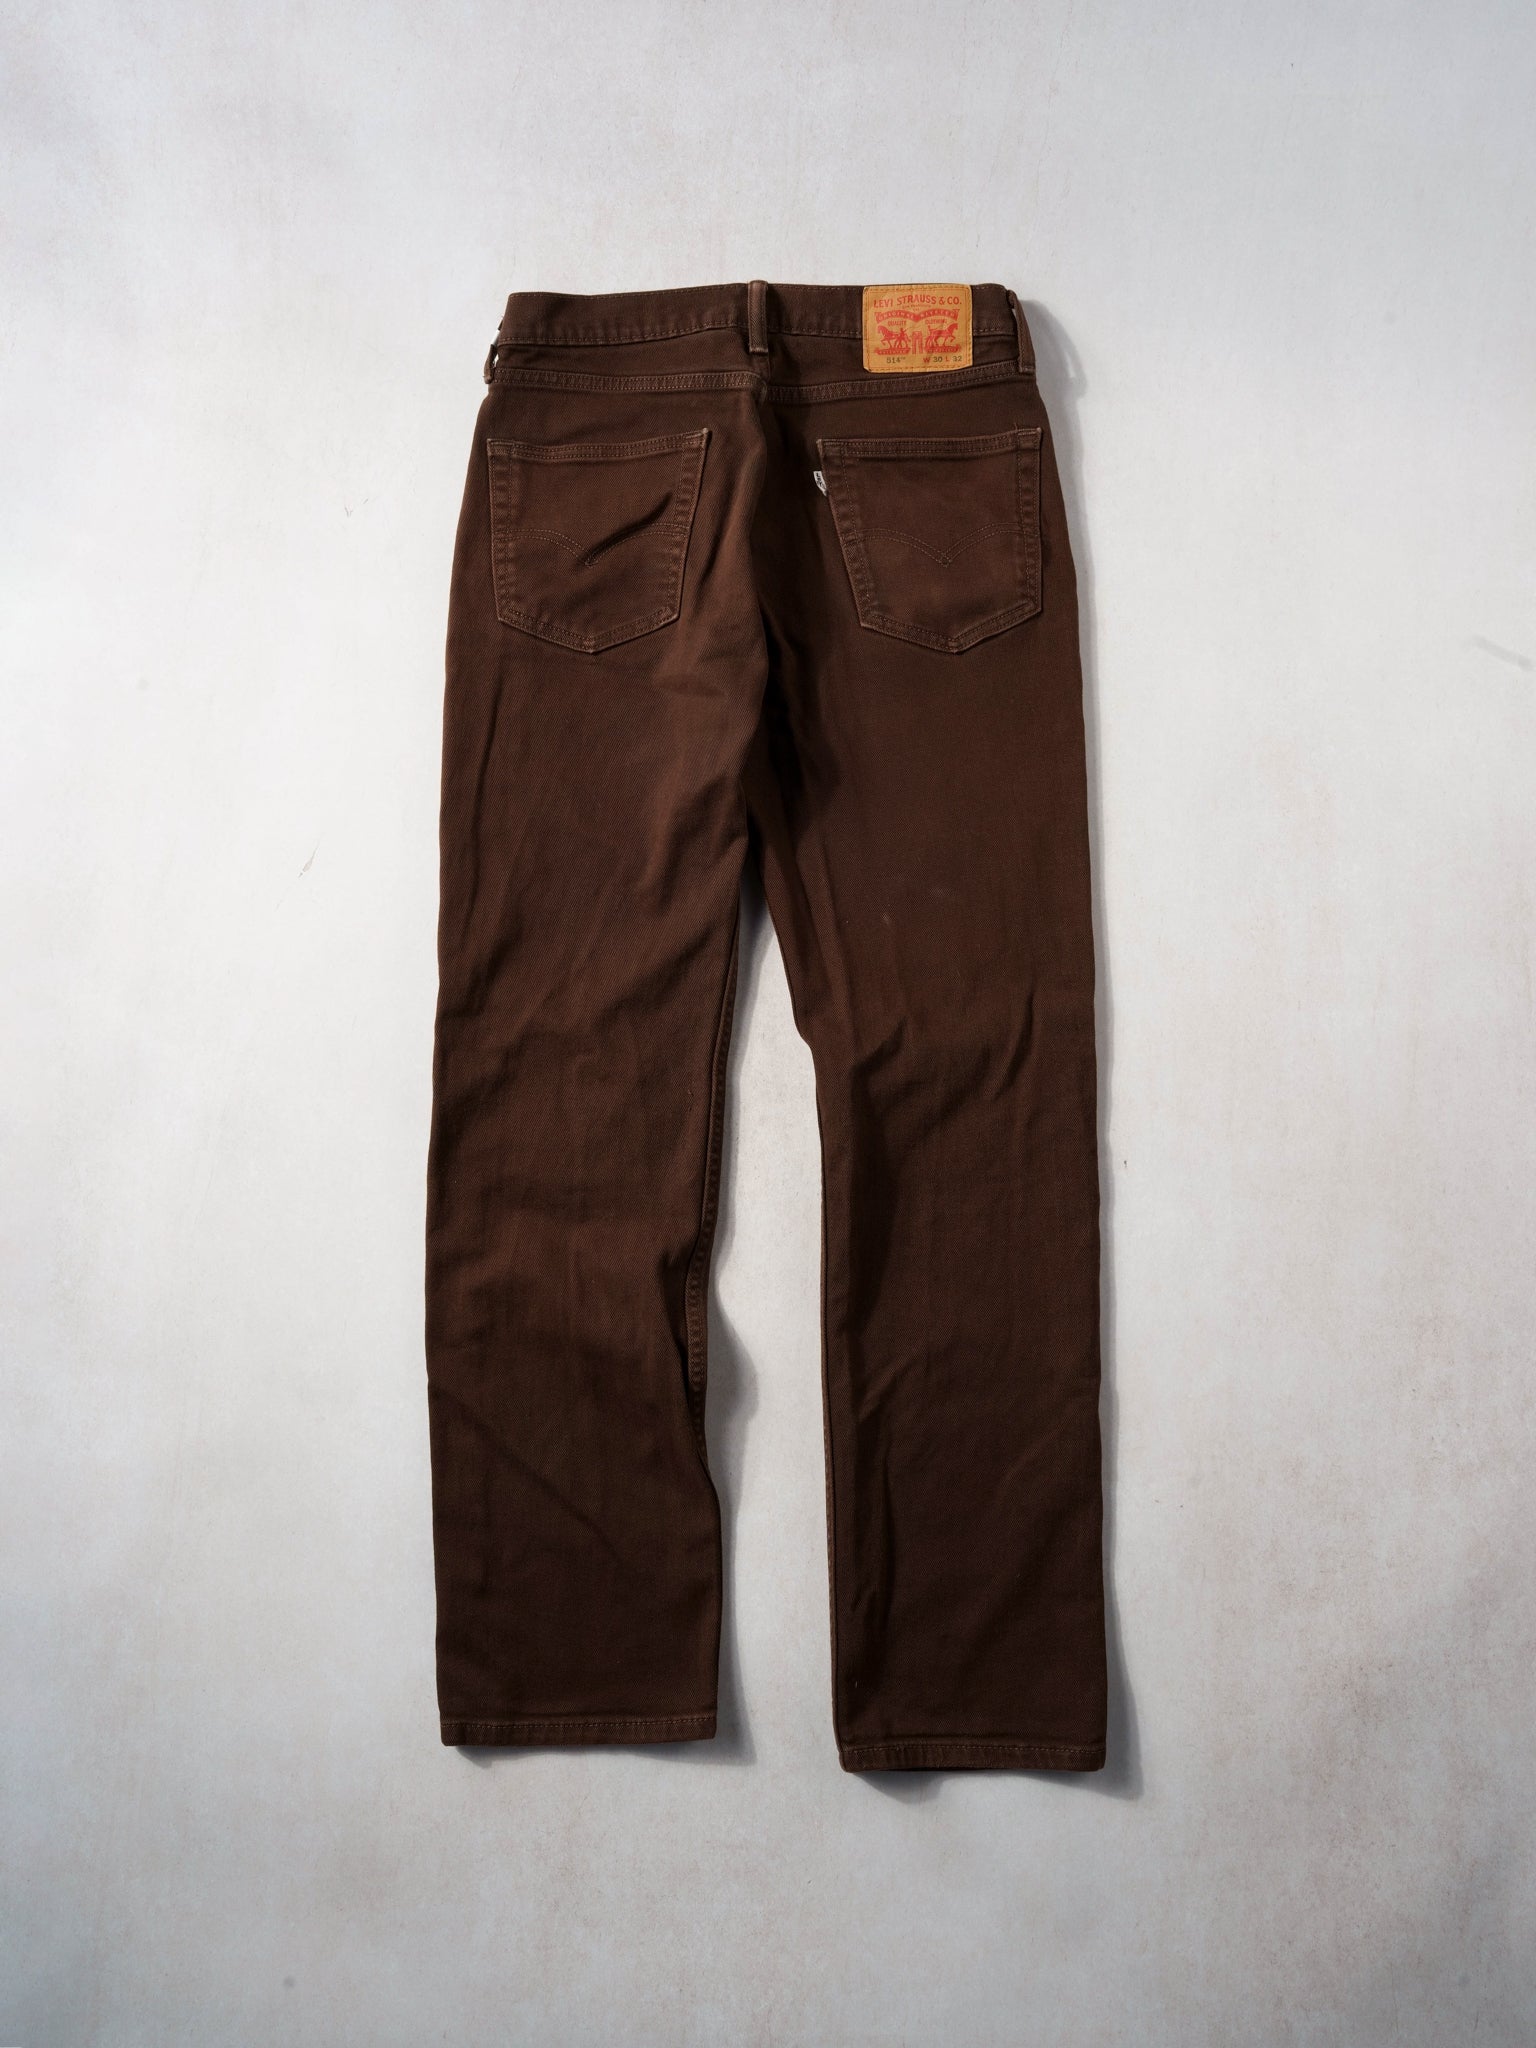 Vintage Y2K Brown Levi's 514 Denim Jeans (32x32)